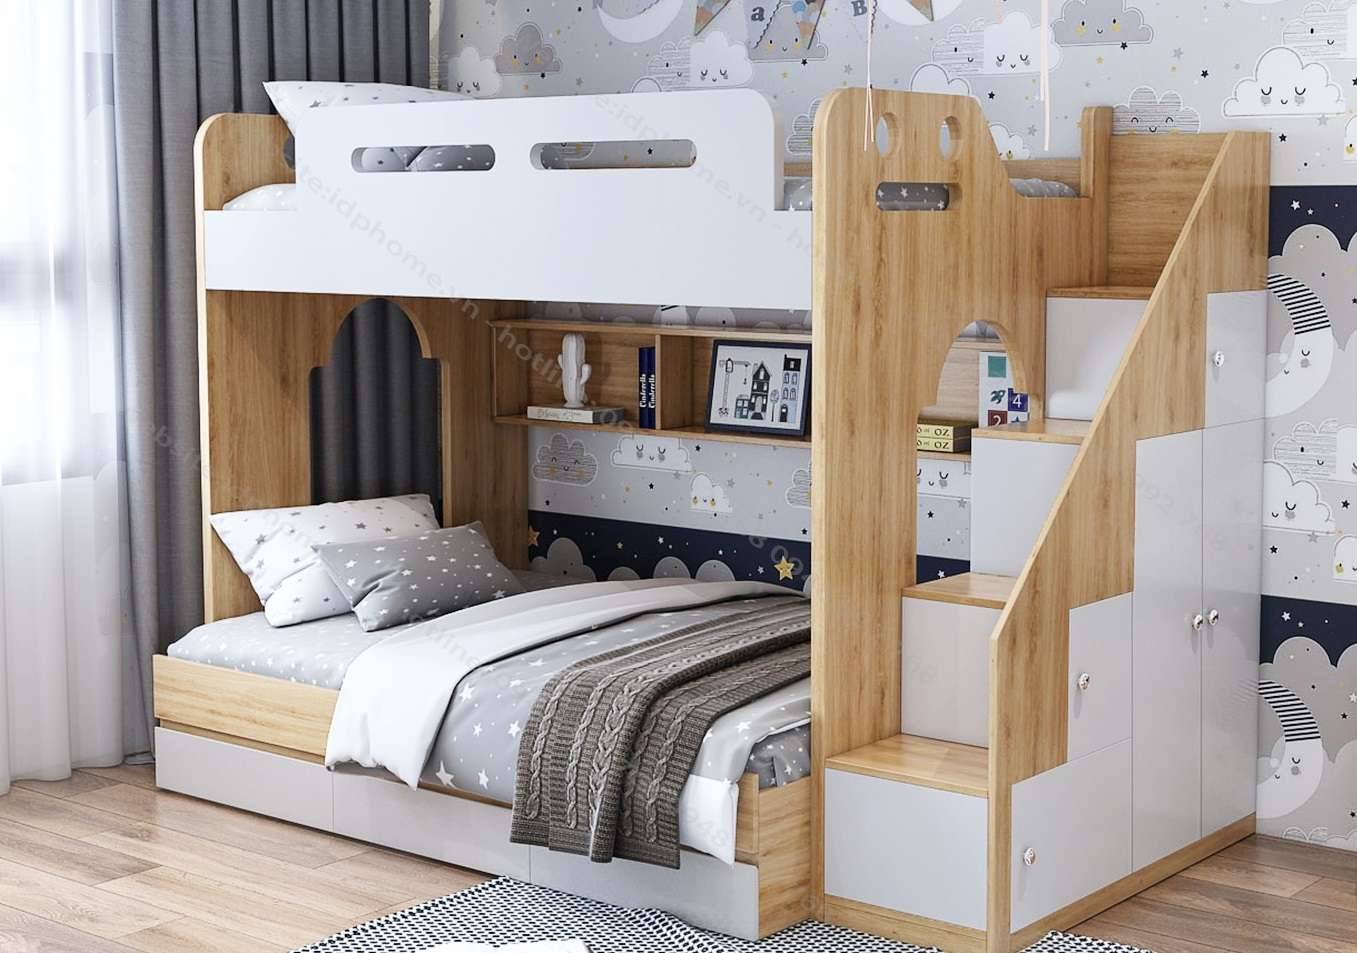 Giường tầng nên làm bằng chất liệu gỗ